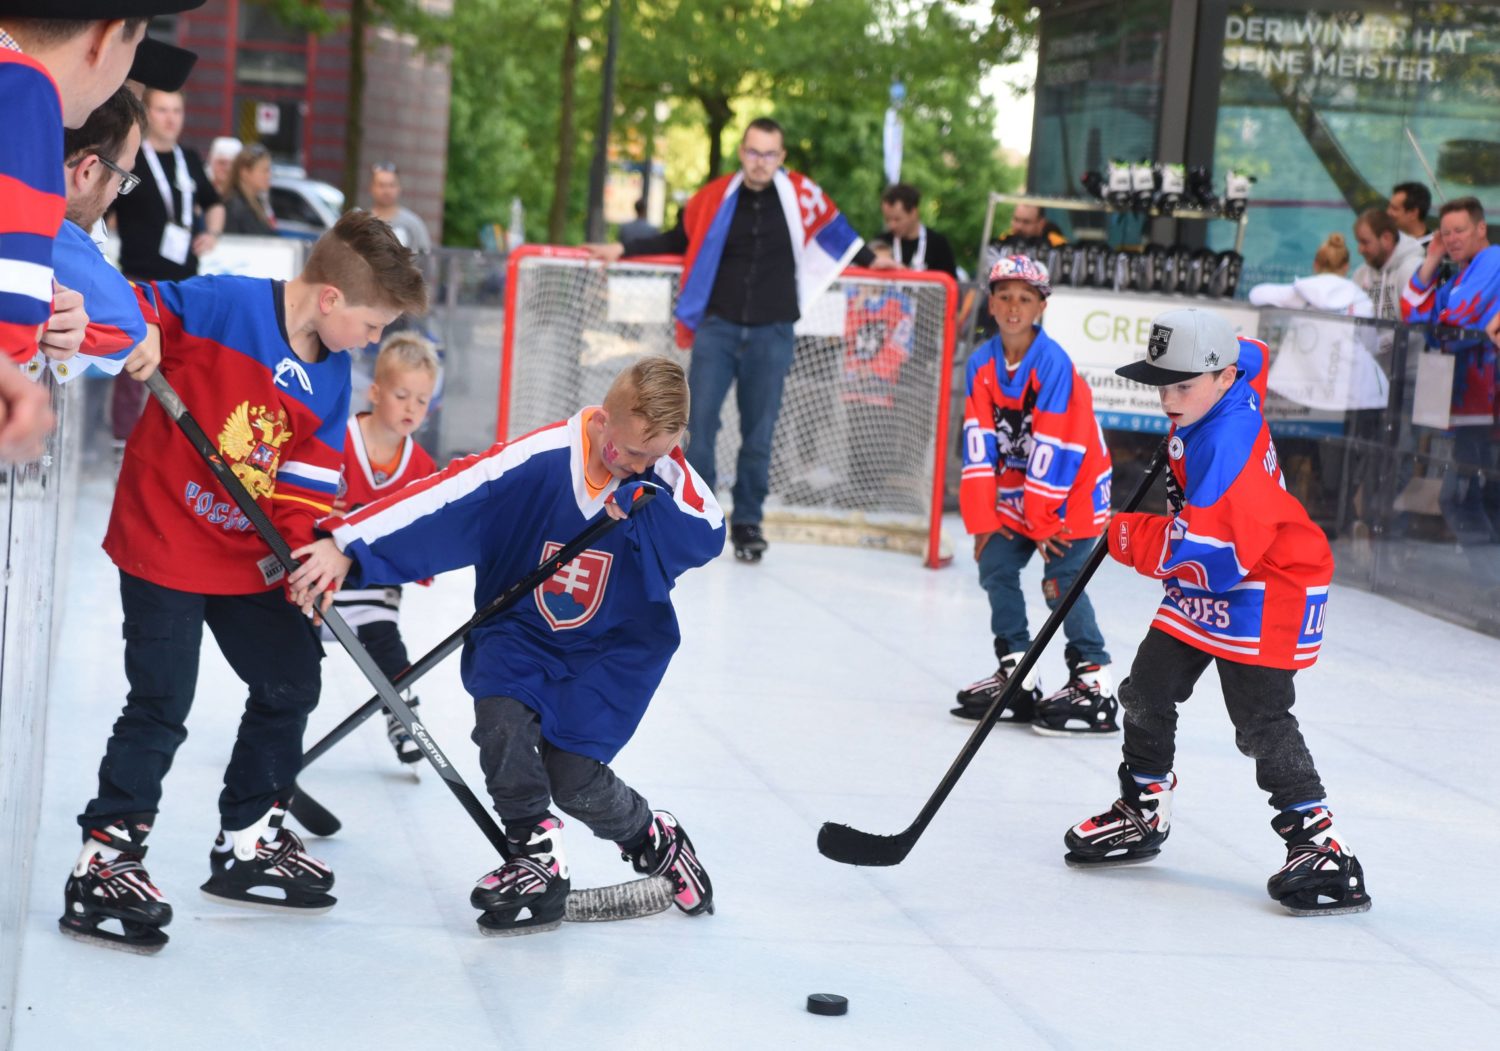 Sport Kinder Berlin Fit werden auf dem Eis: Eishockey war und ist sehr populär.